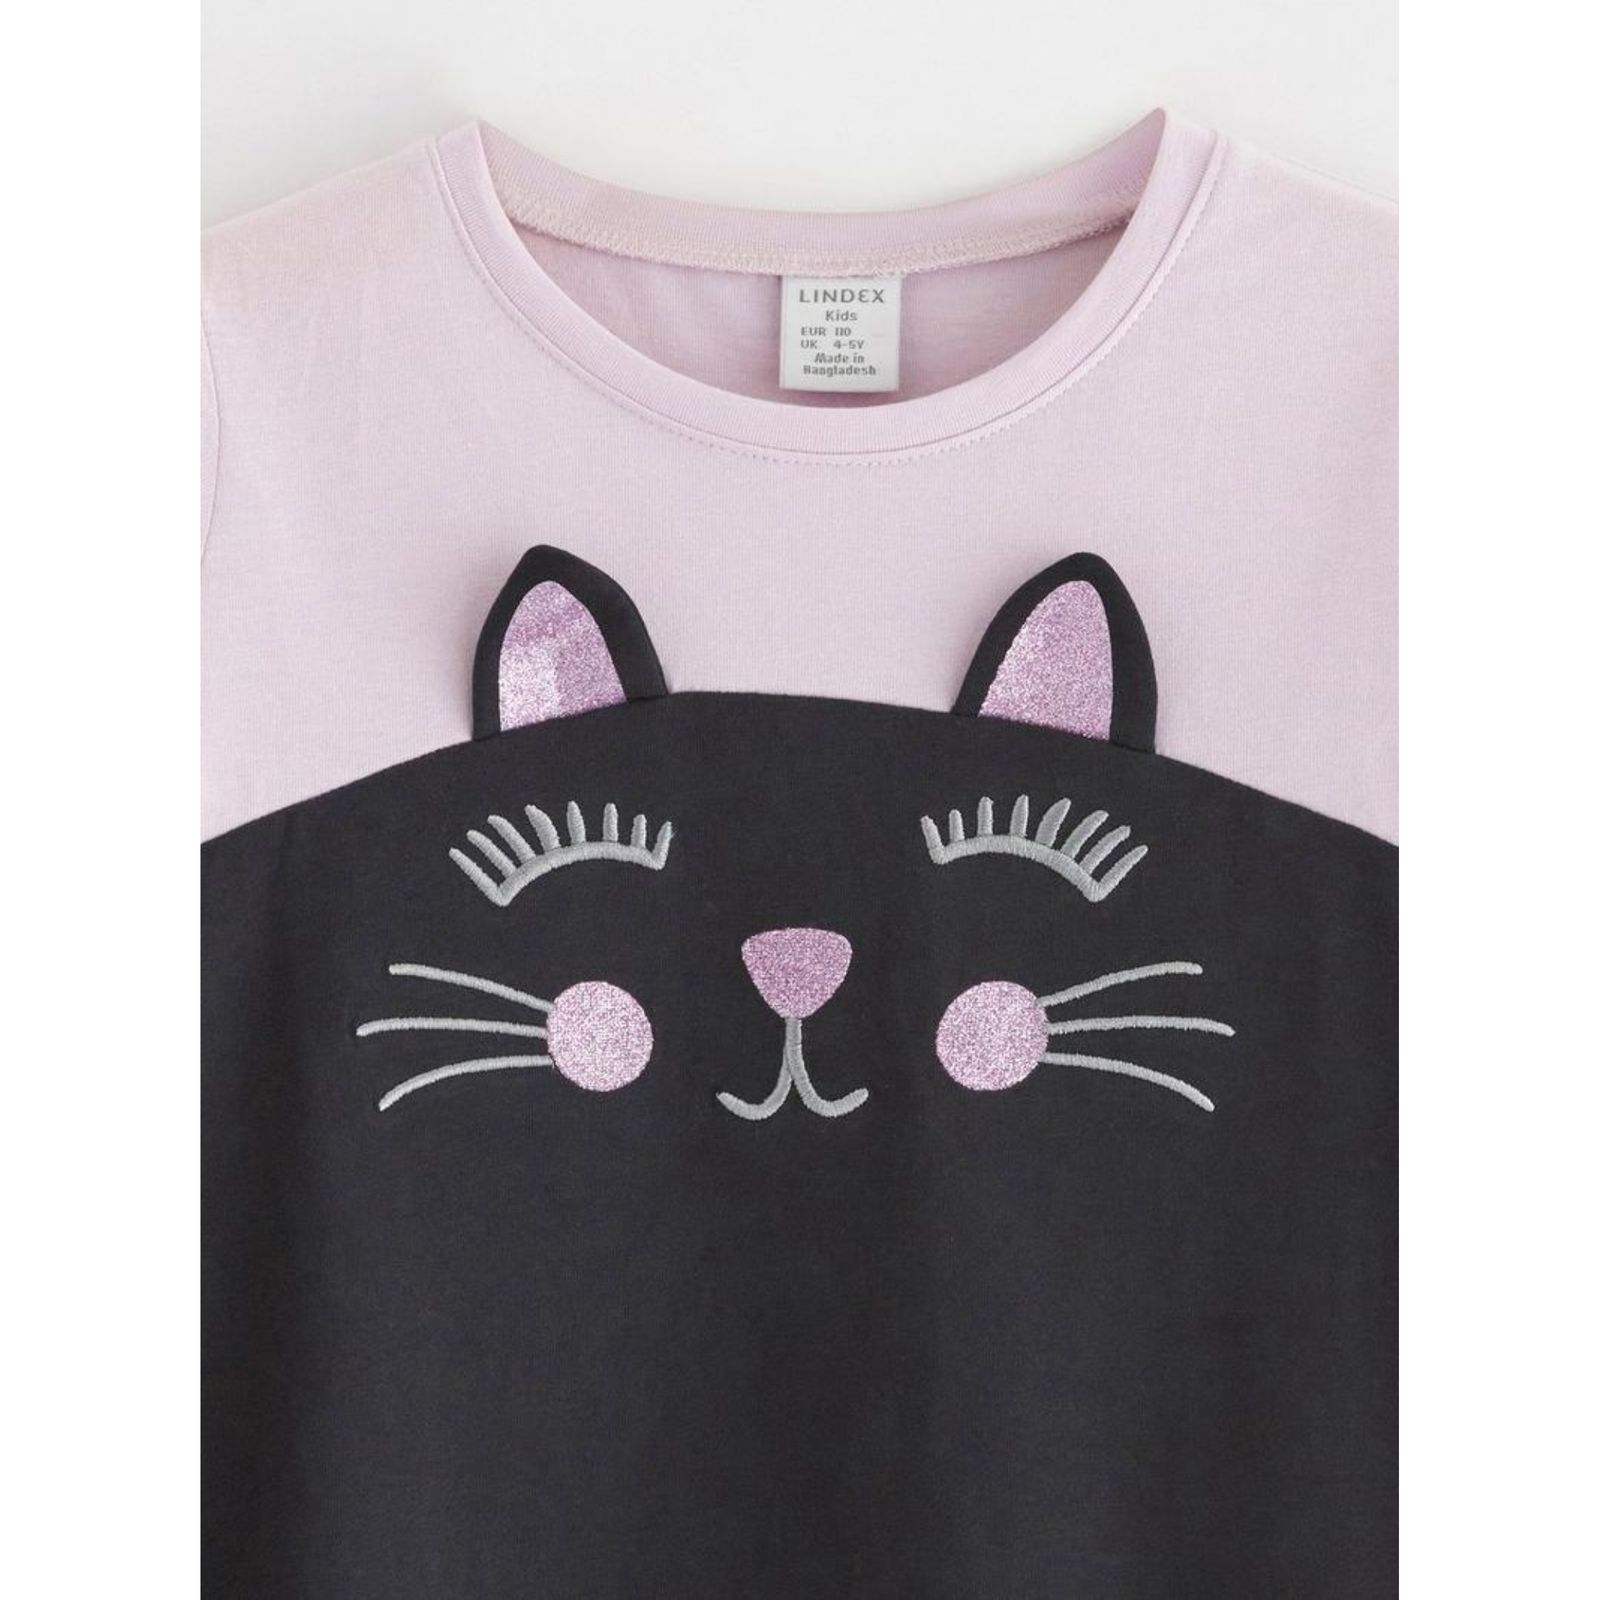 پیراهن دخترانه لیندکس مدل گربه کد 0365 -  - 3